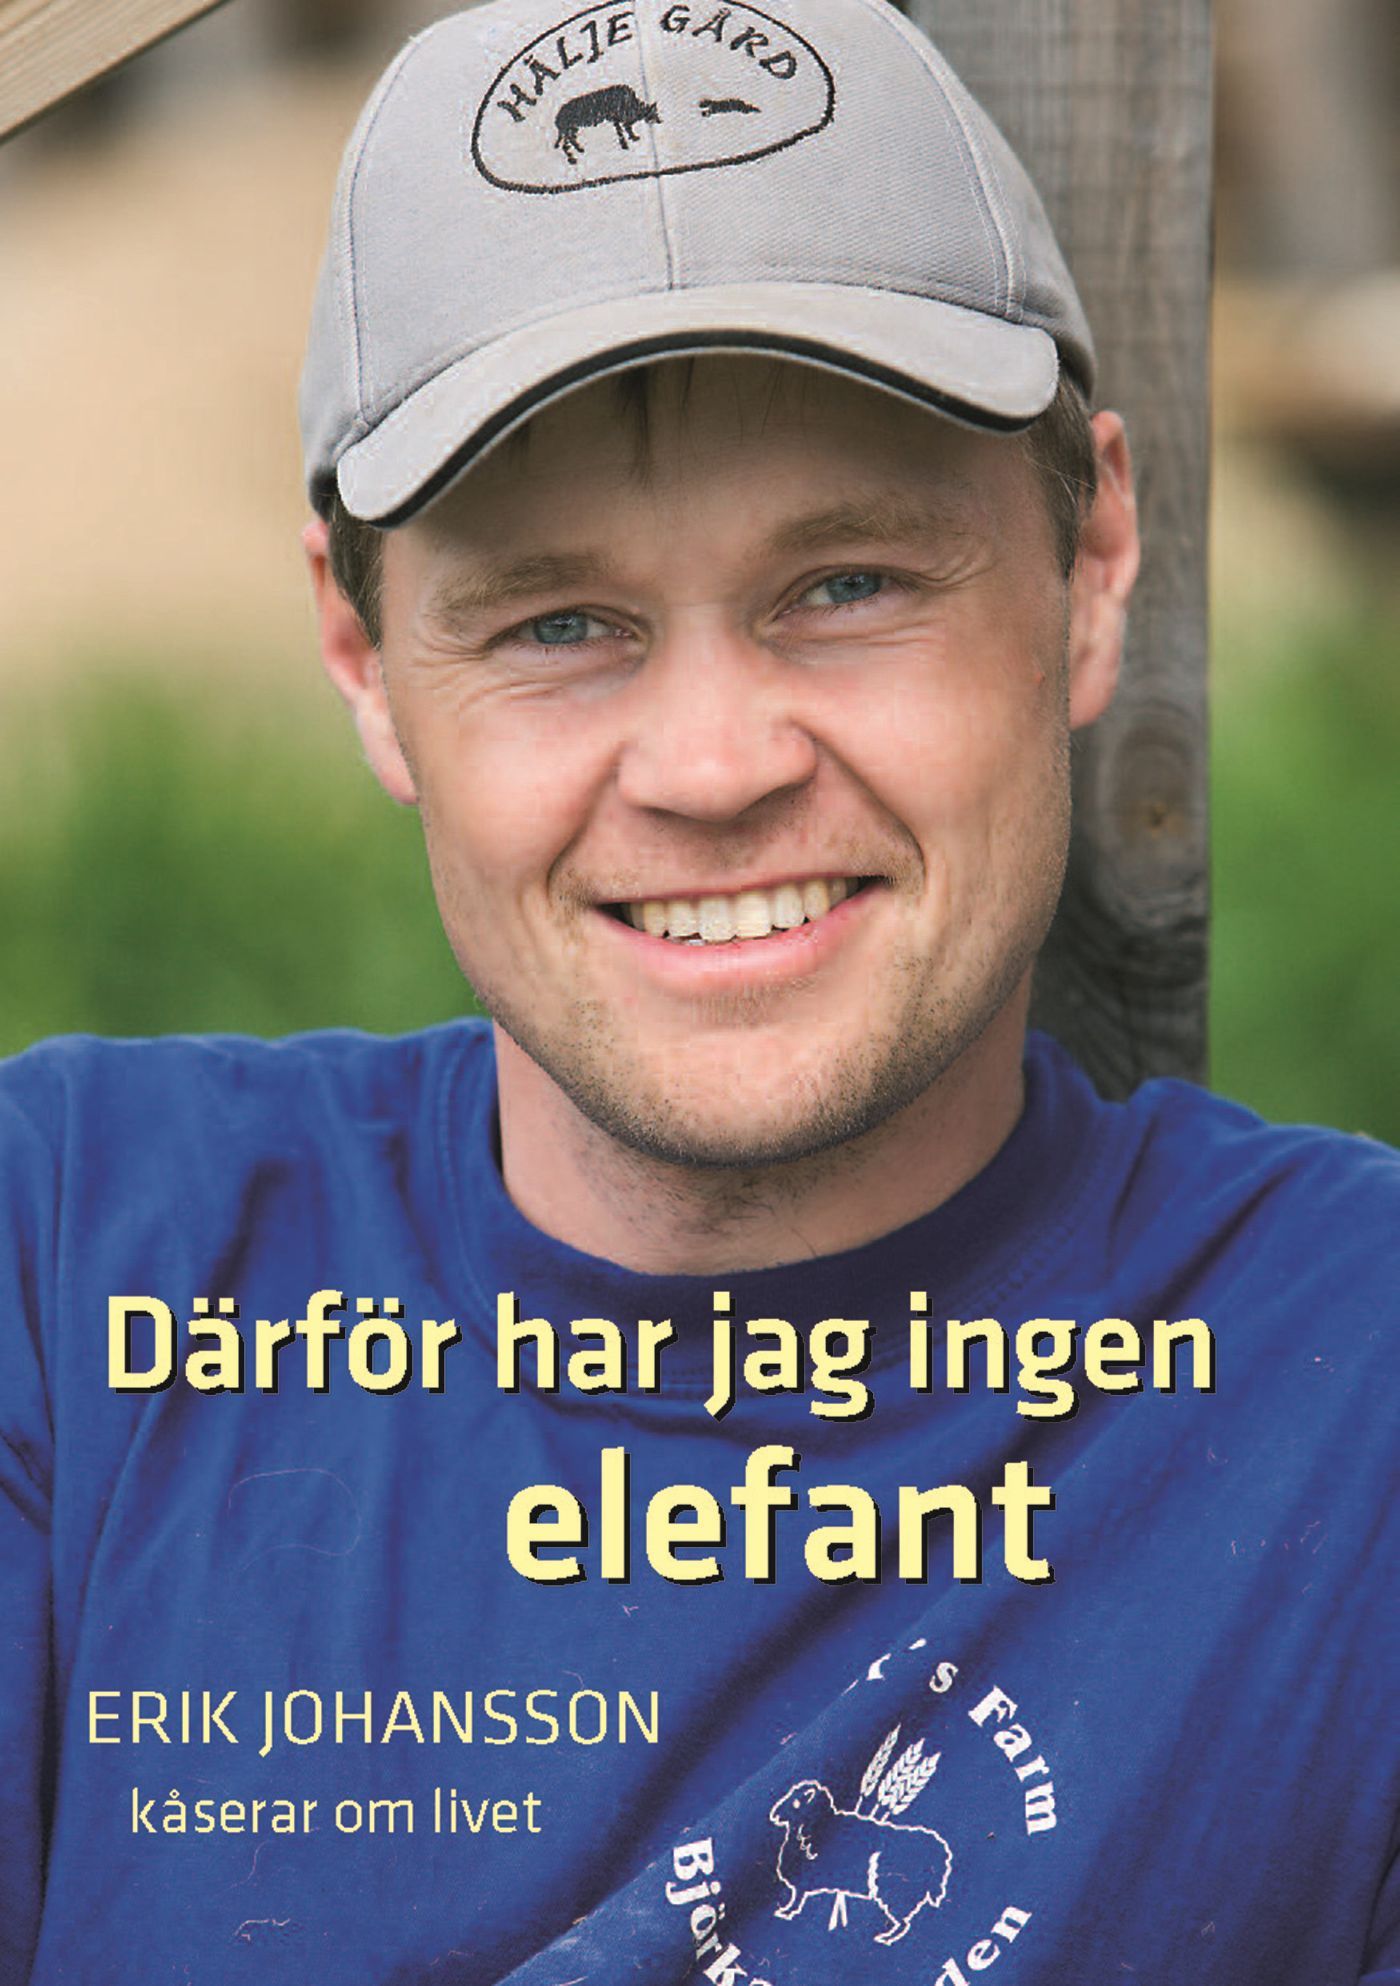 Därför har jag ingen elefant, e-bog af Erik Johansson